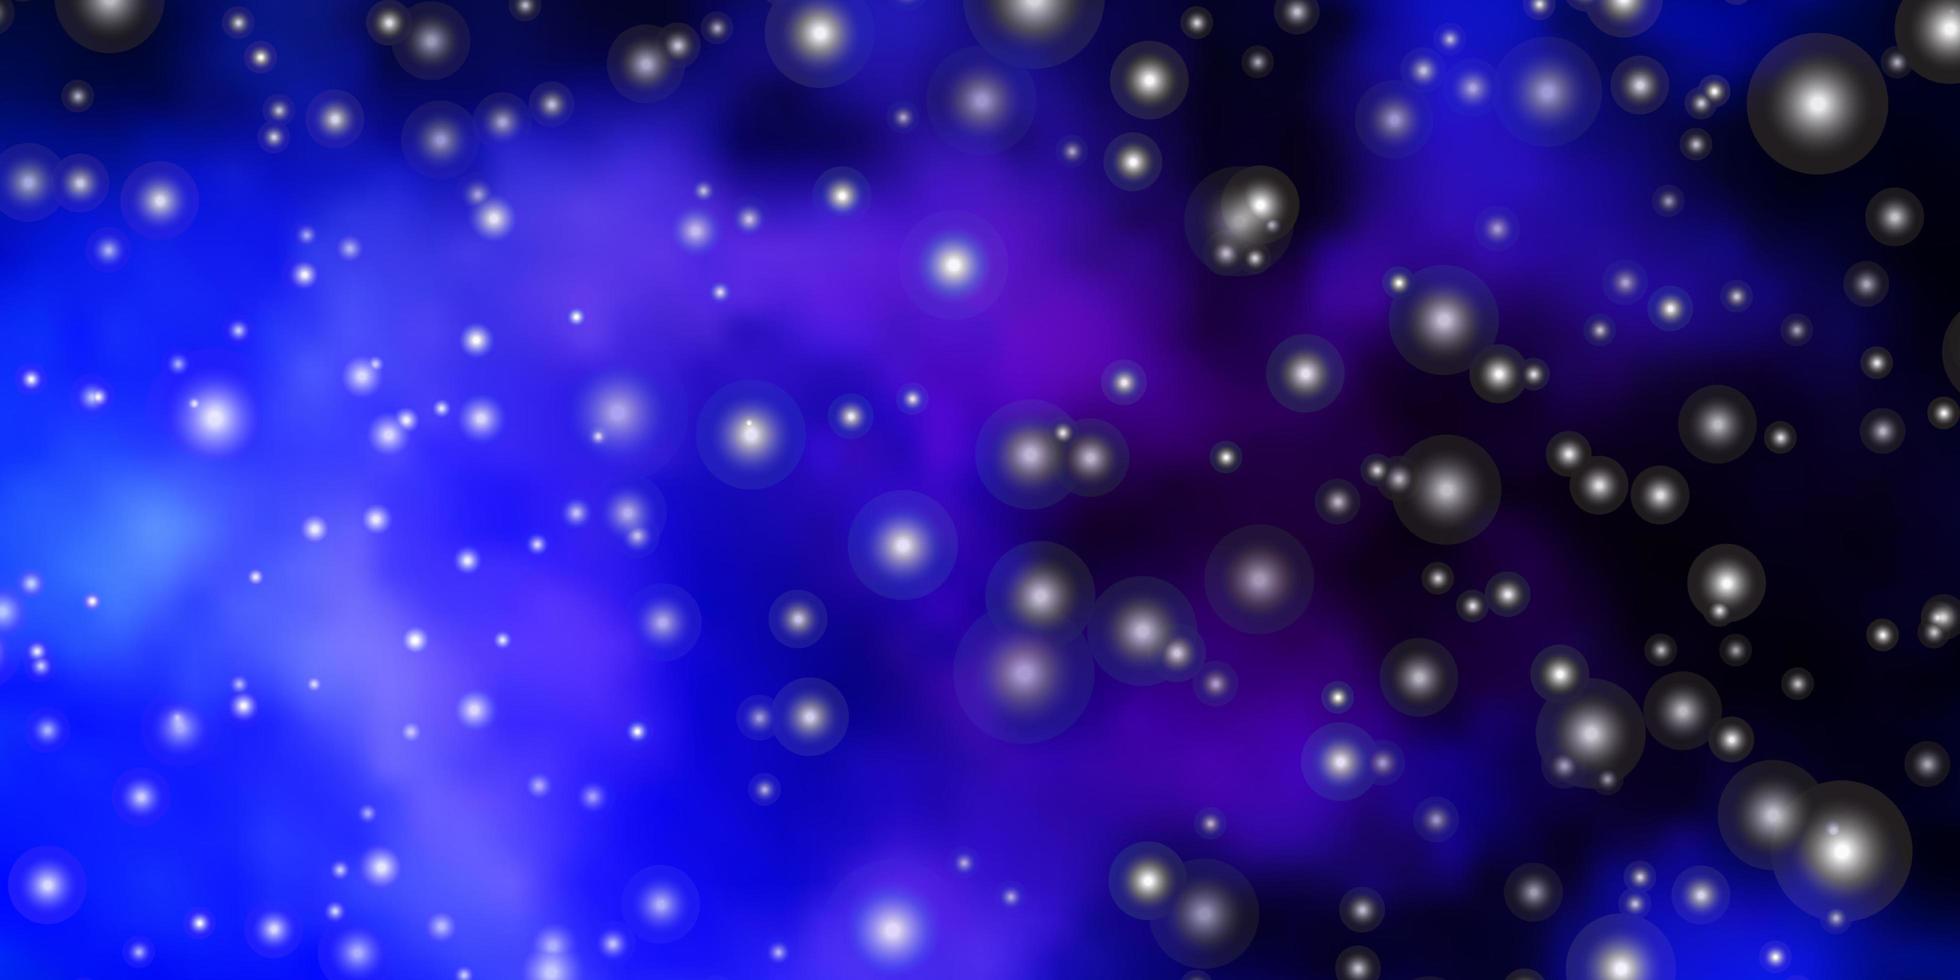 mörkrosa, blå vektormall med neonstjärnor. vektor